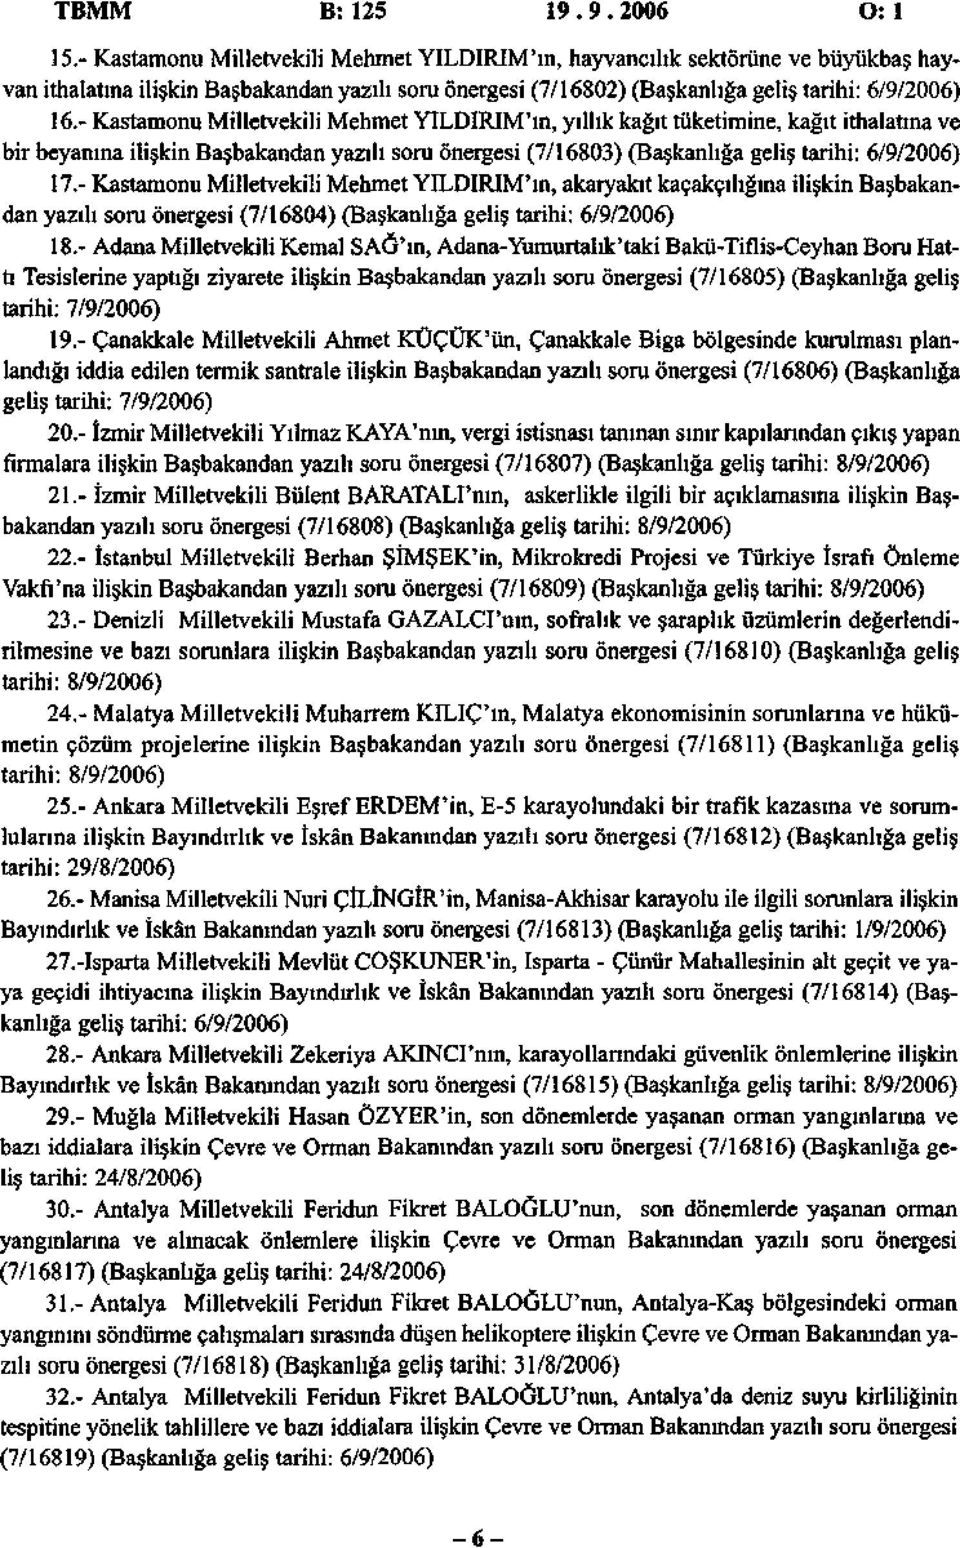 - Kastamonu Milletvekili Mehmet YILDIRIM'ın, yıllık kağıt tüketimine, kağıt ithalatına ve bir beyanına ilişkin Başbakandan yazılı soru önergesi (7/16803) (Başkanlığa geliş tarihi: 6/9/2006) 17.